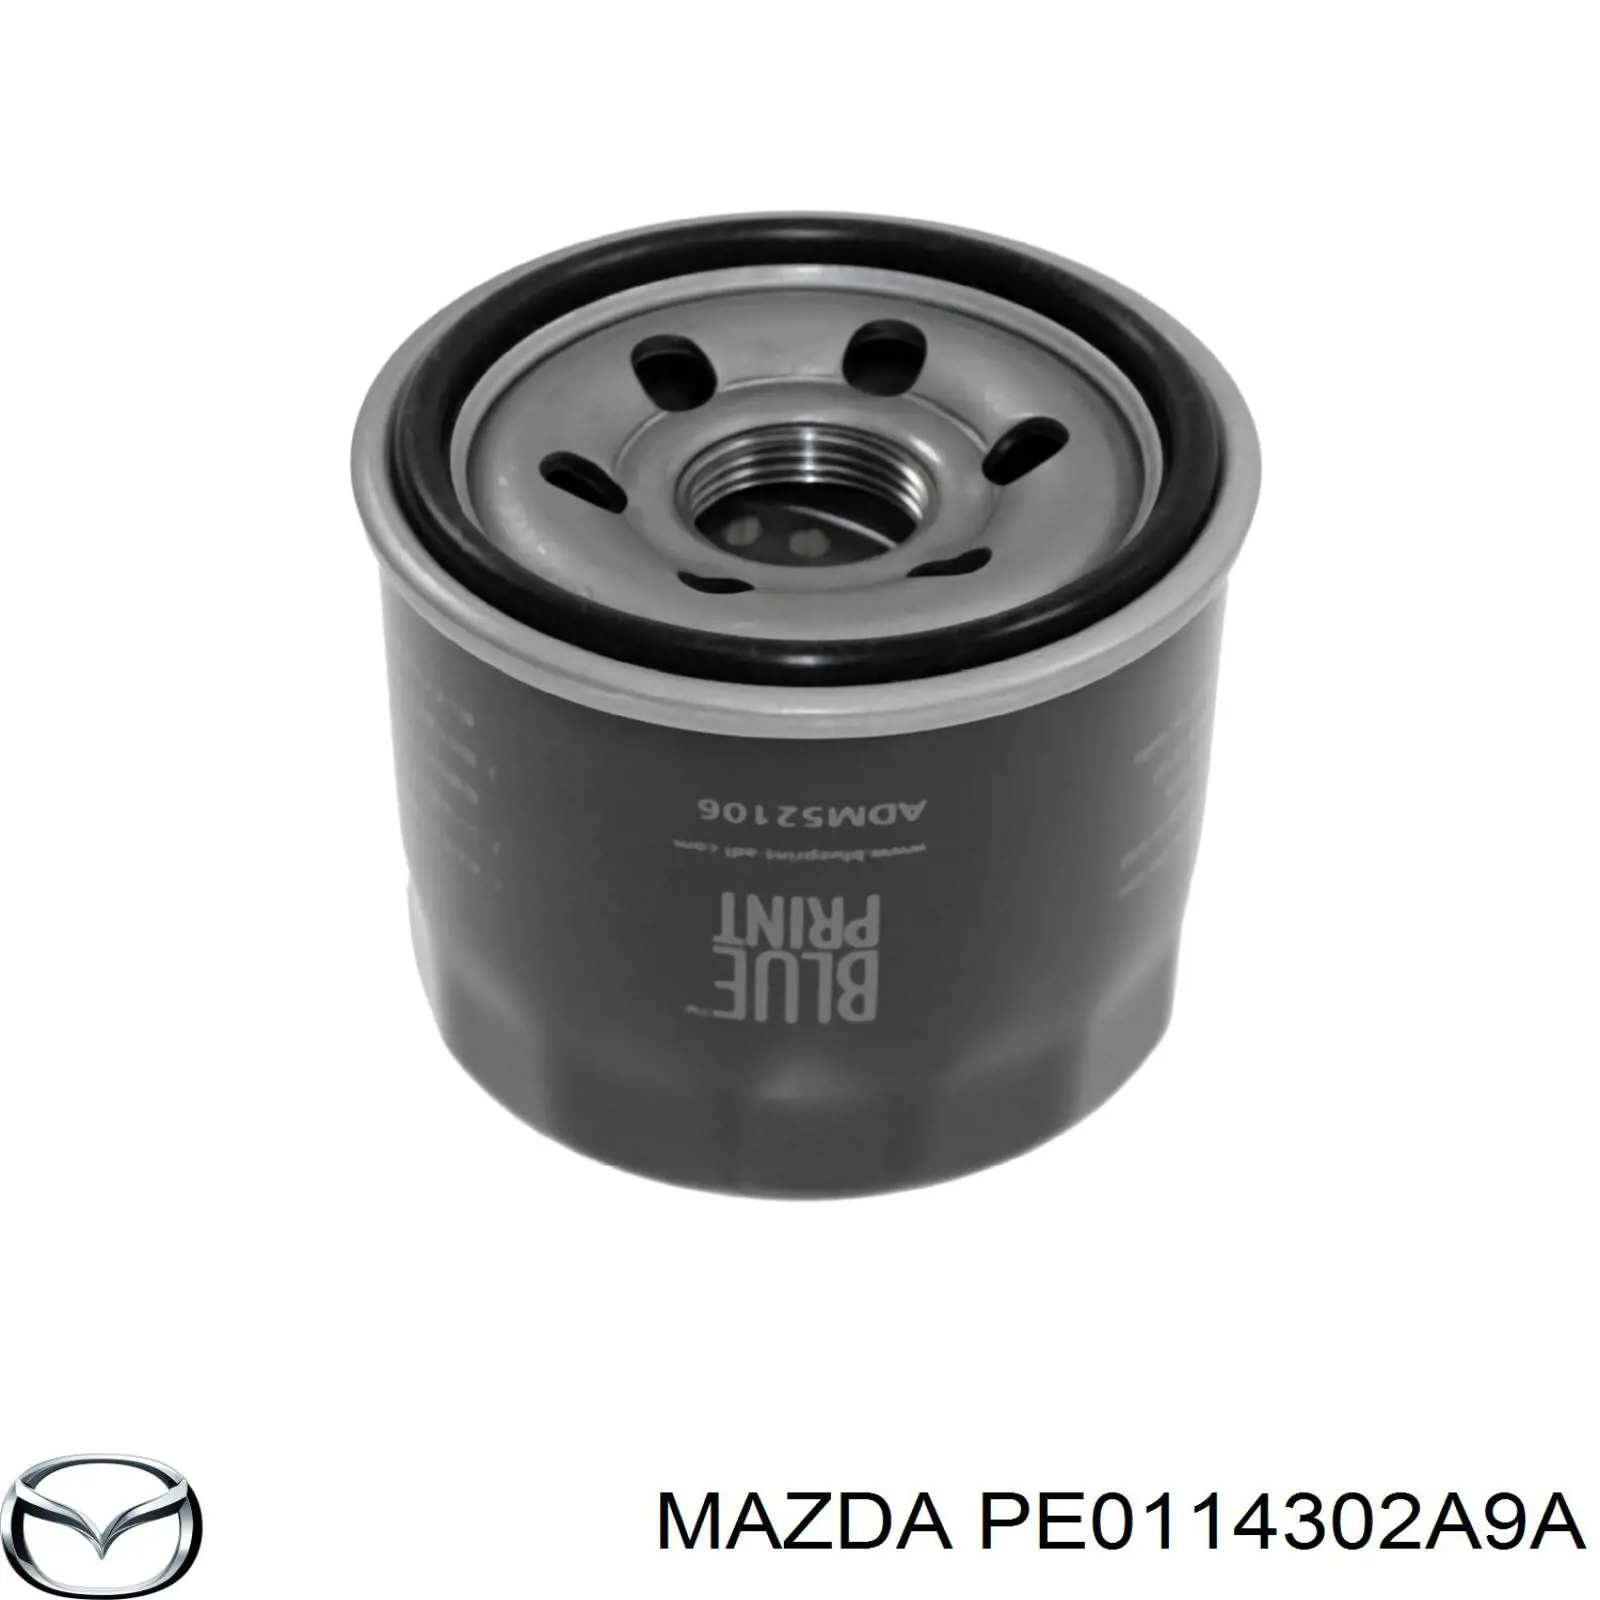 PE0114302A9A Mazda filtro de aceite